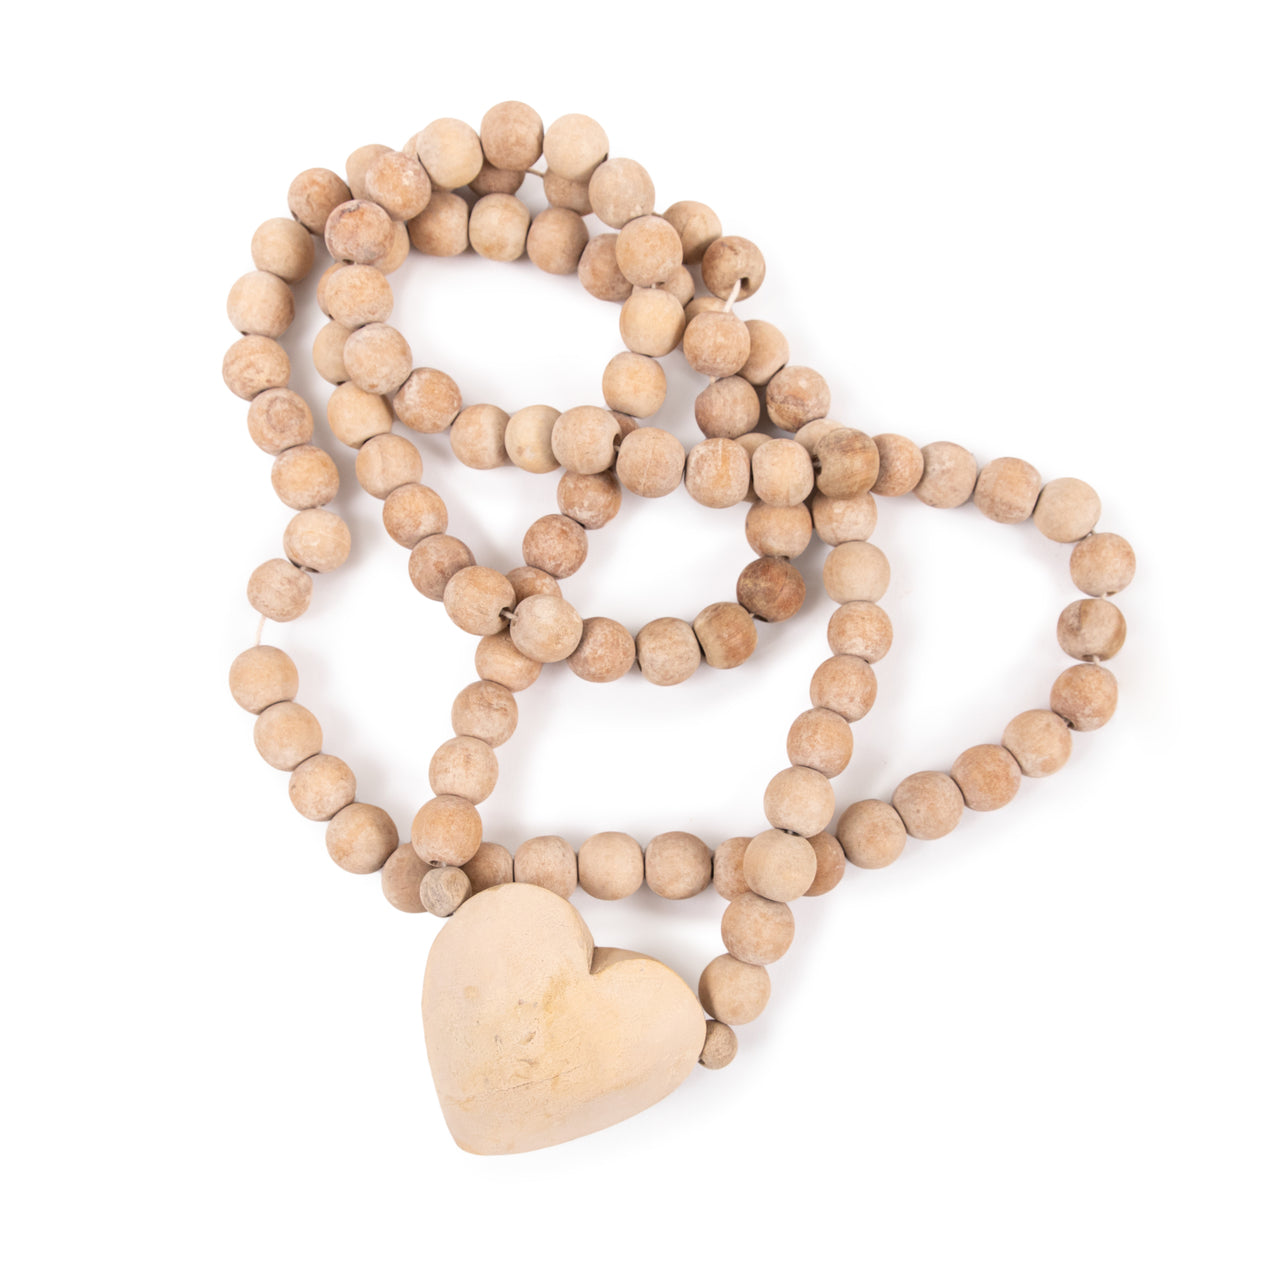 Sugarboo Prayer Beads